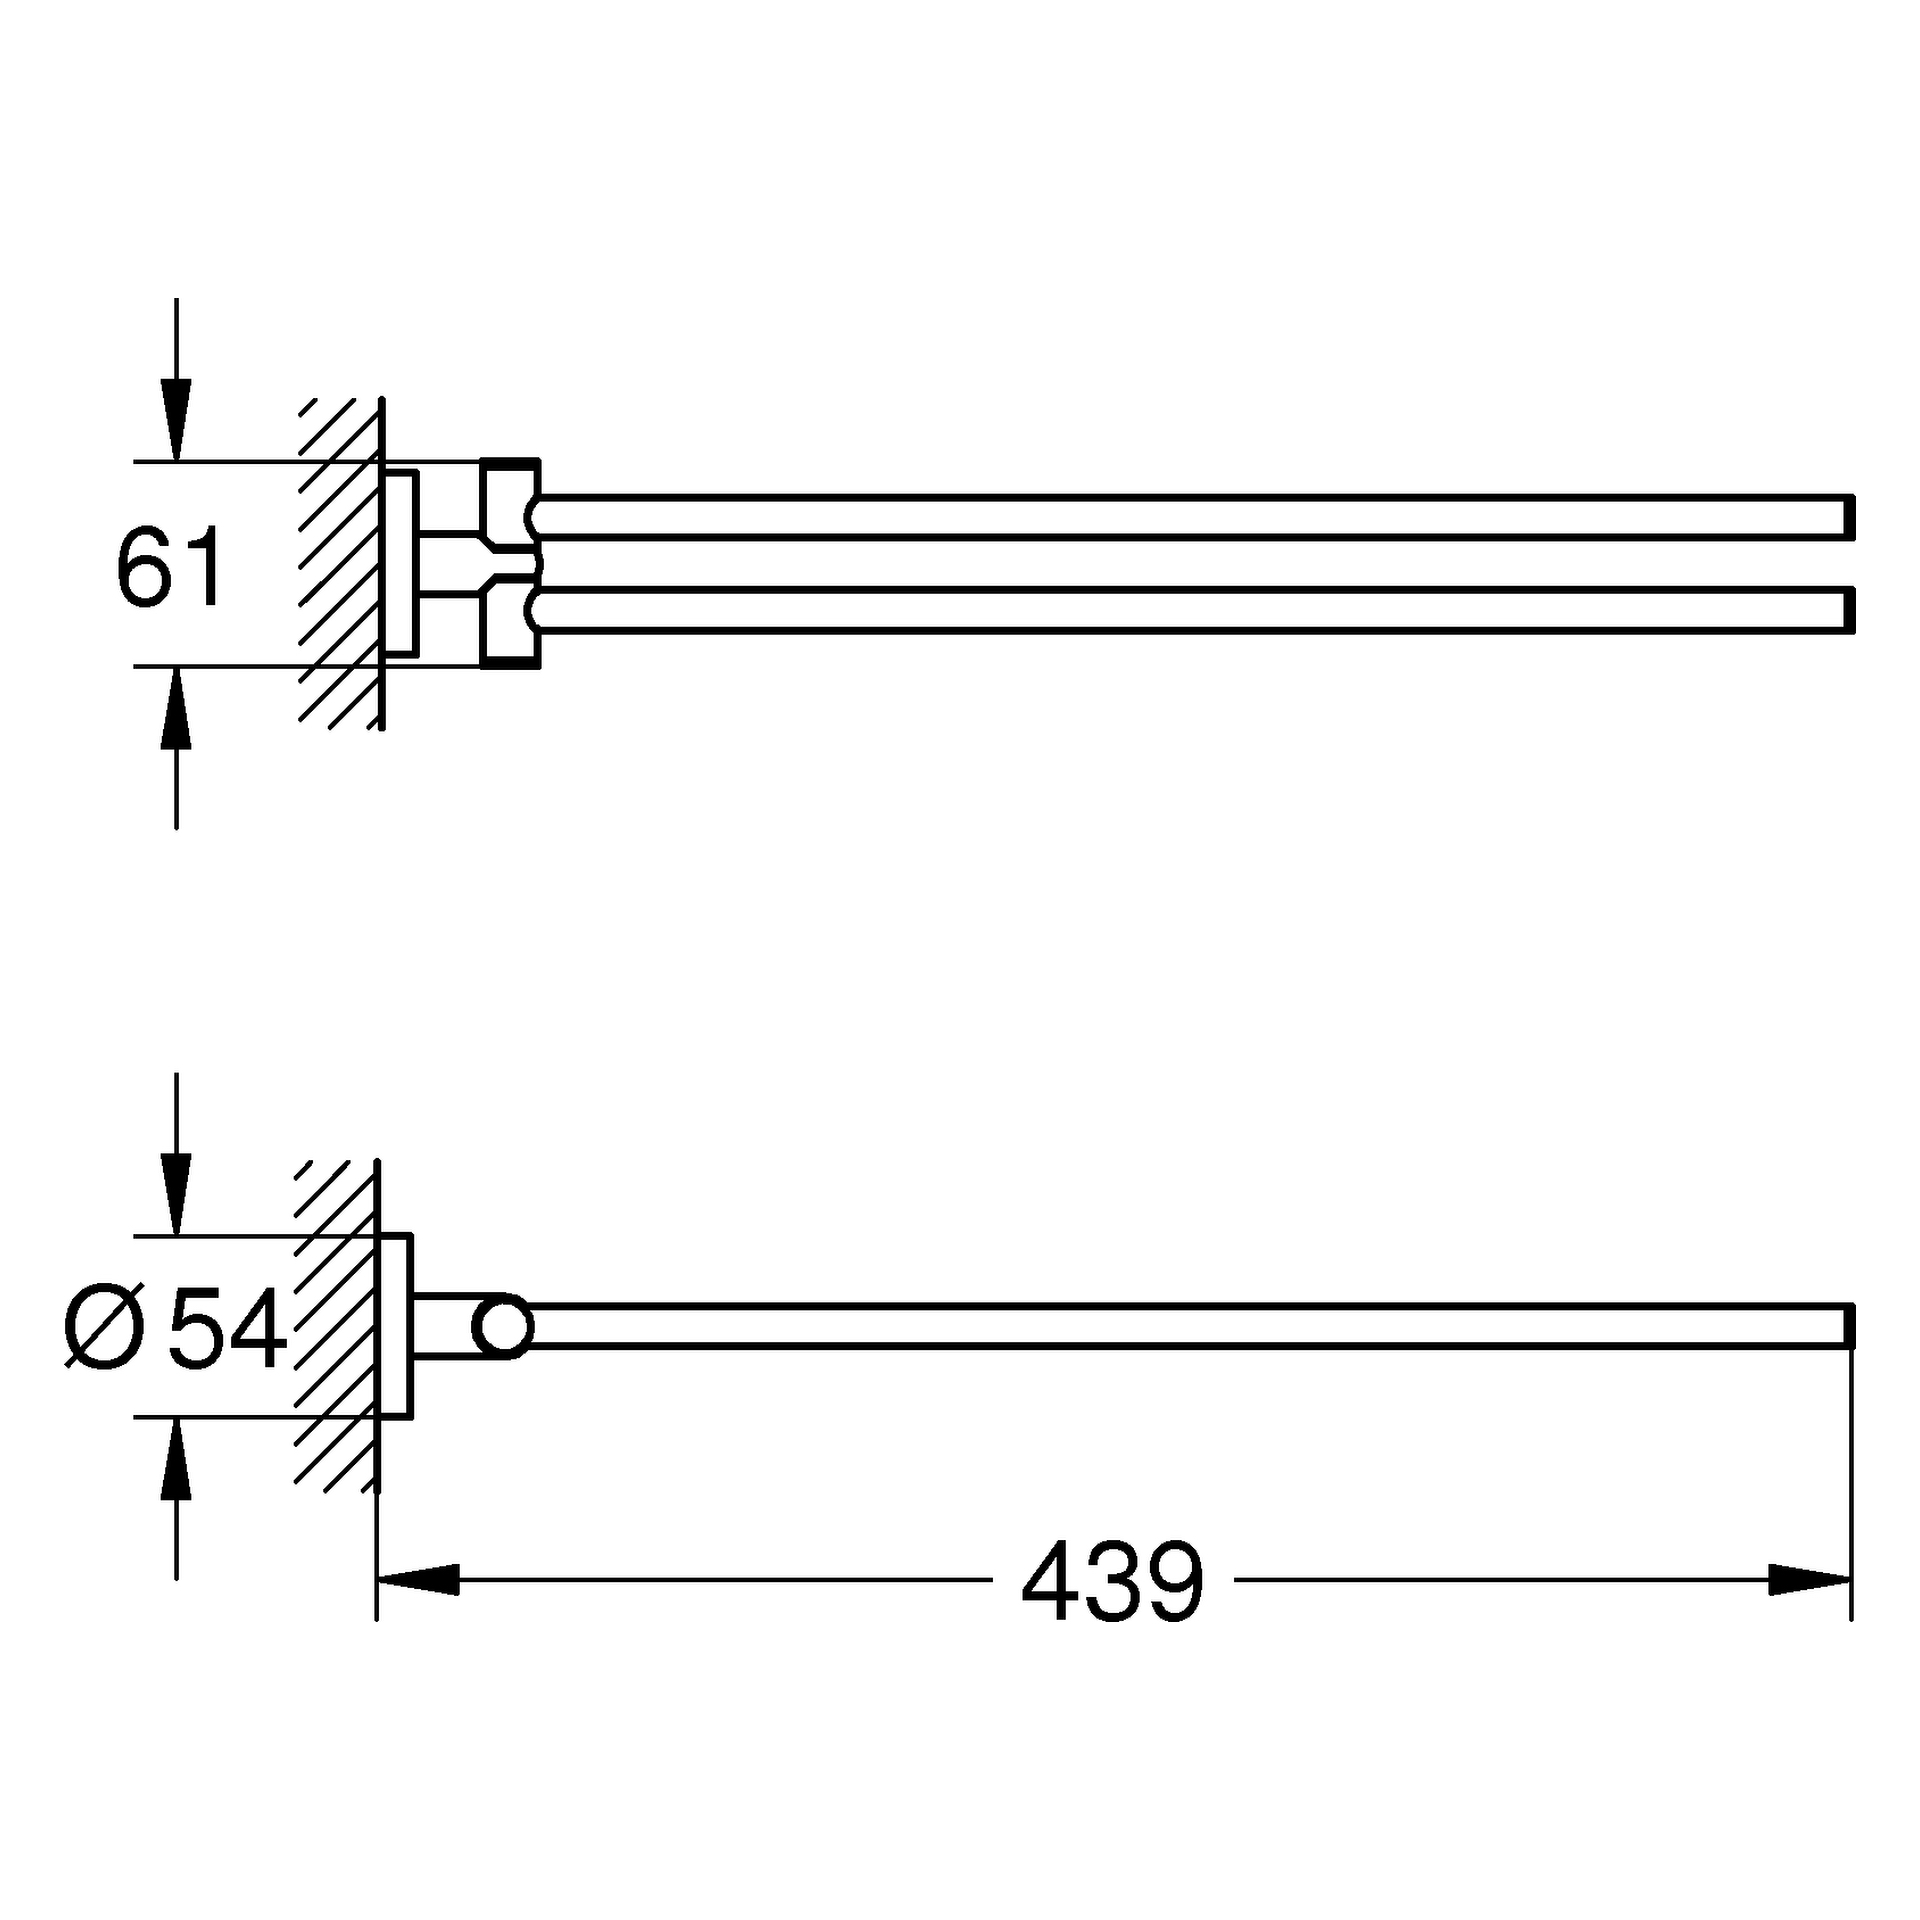 Handtuchhalter Essentials 40371_1, 2-armig, schwenkbar, 439 mm, chrom